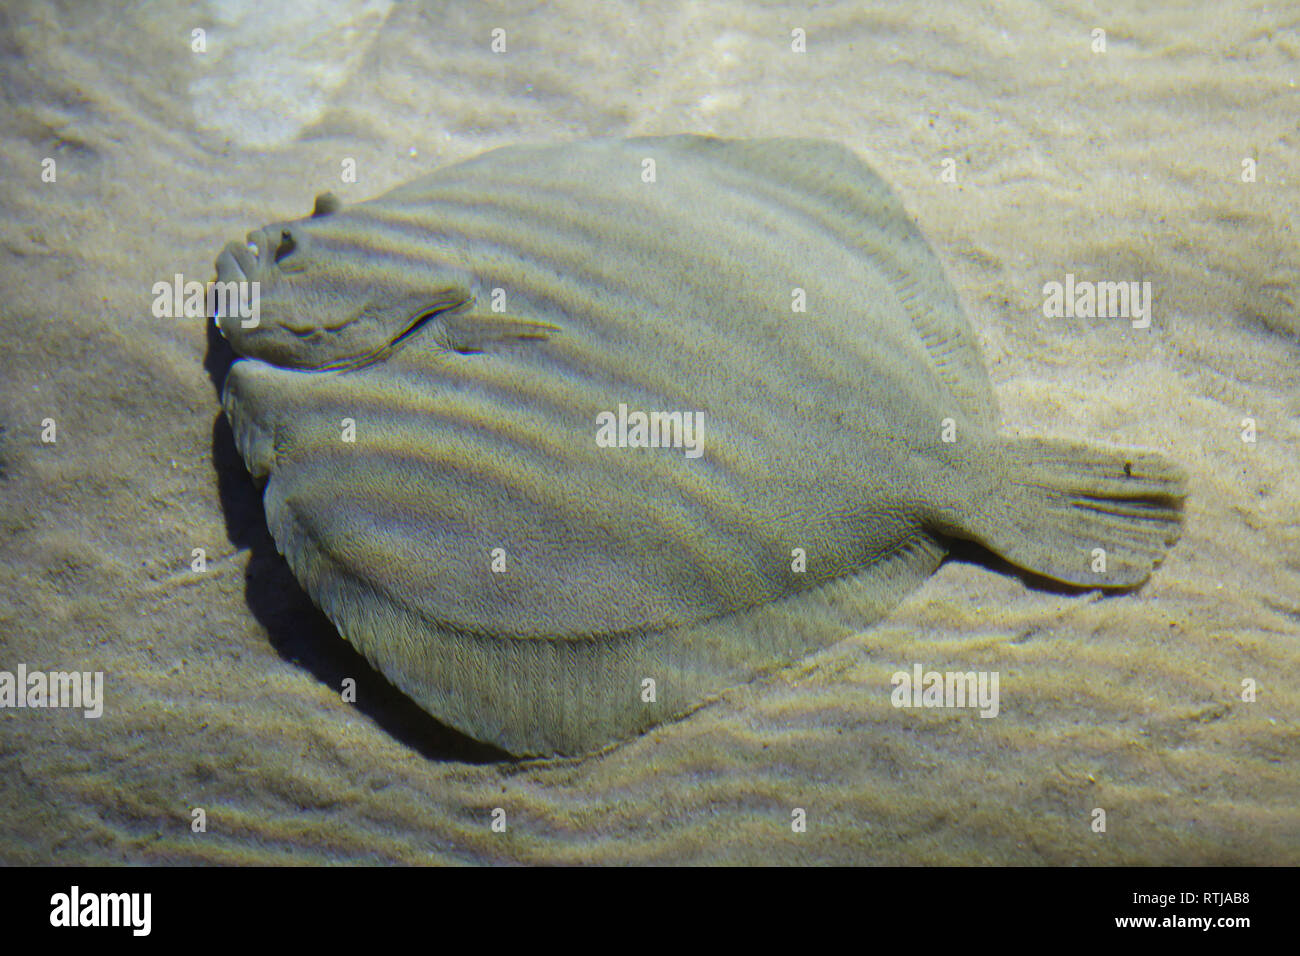 Brill (Scophthalmus rhombus). Marine flatfish. Stock Photo